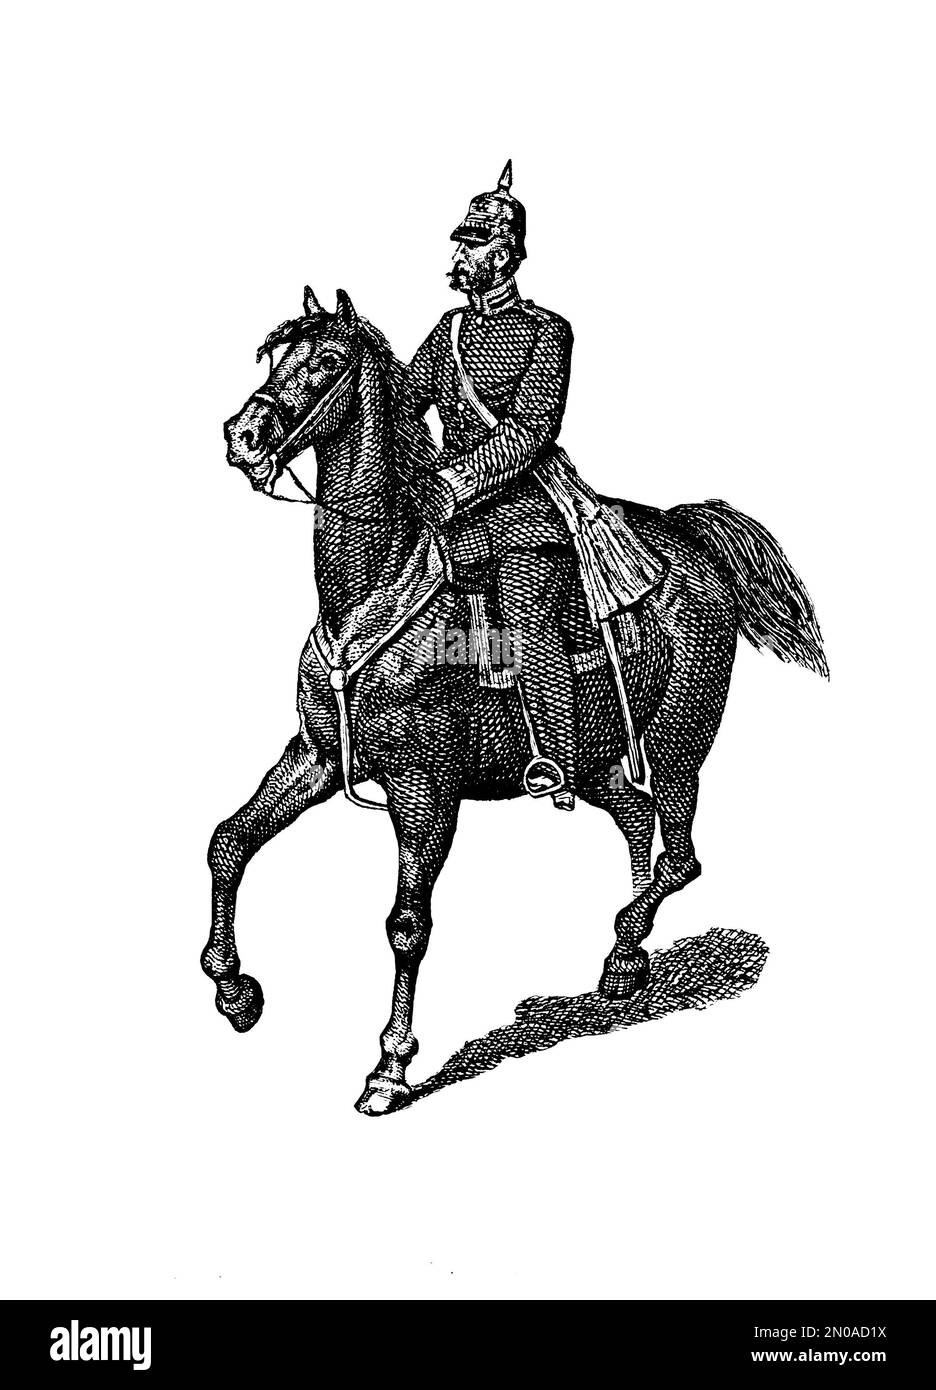 19th-century engraving of Prussian troop in XVIII-XIX century. Illustration published in Systematischer Bilder Atlas - Kriegwesen und Seewesen, Ikonog Stock Photo